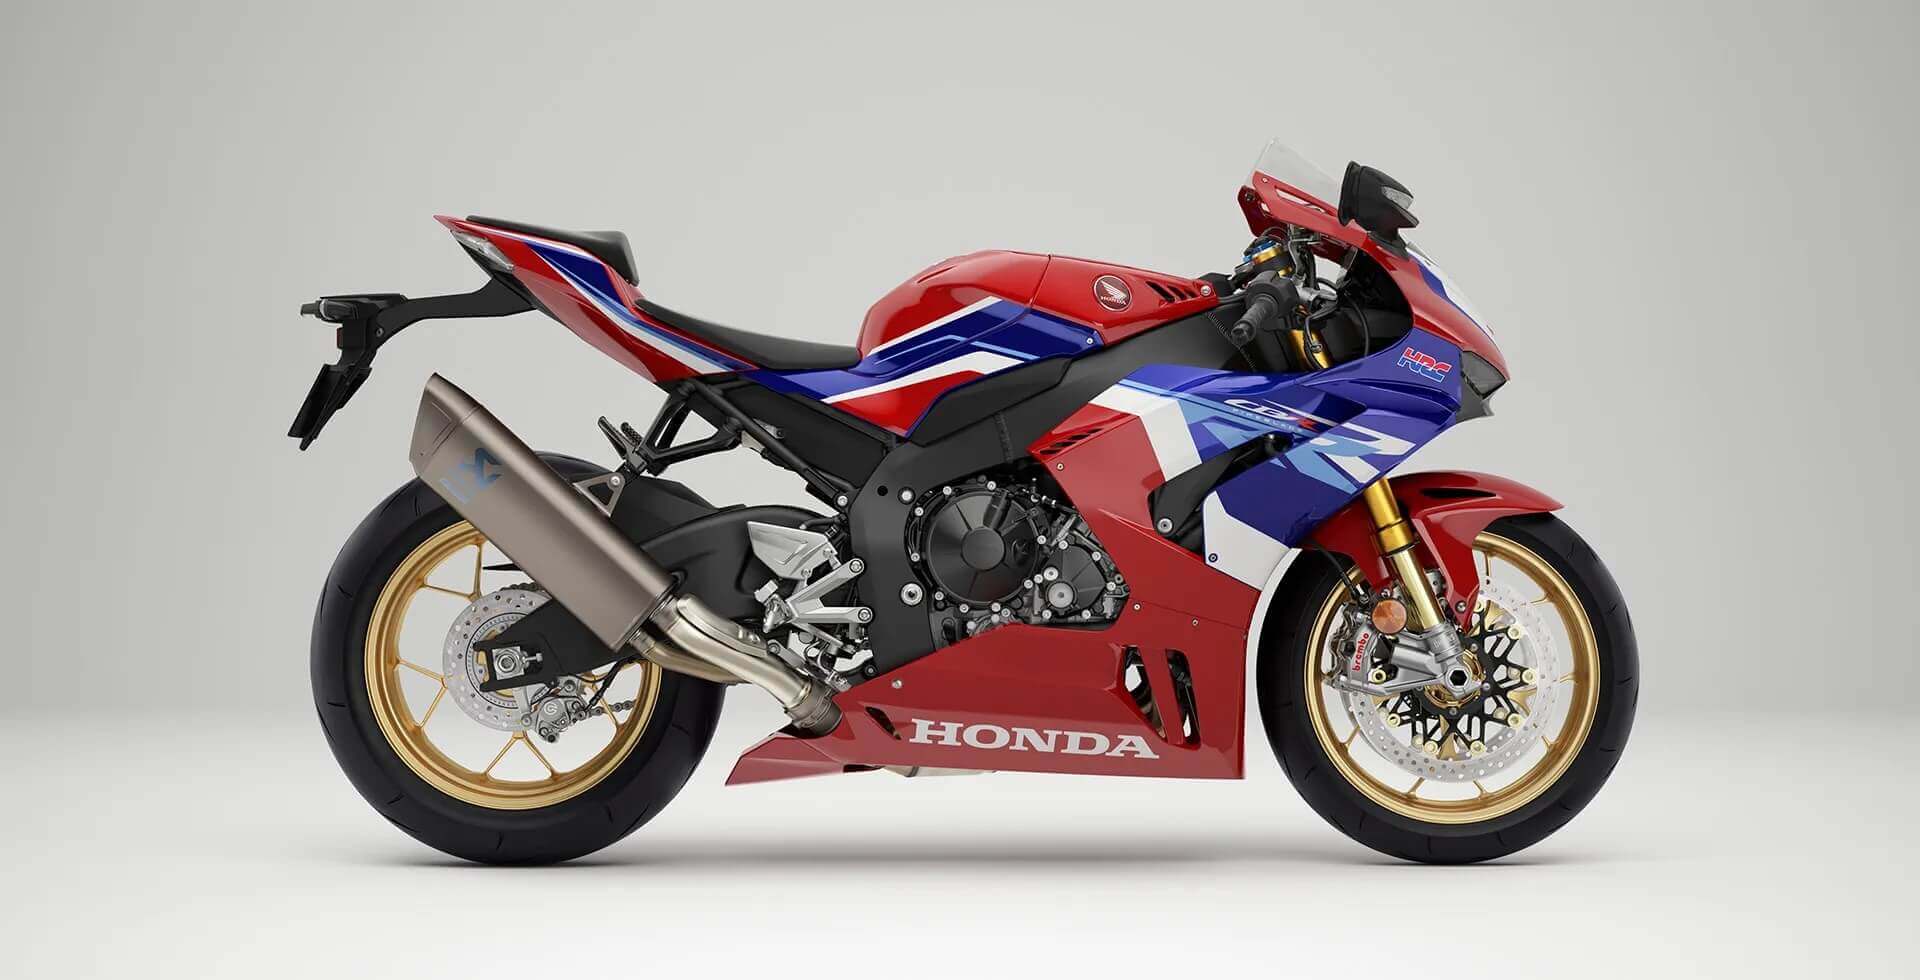 Honda Motos  Modelos 0km com as Asas da Liberdade